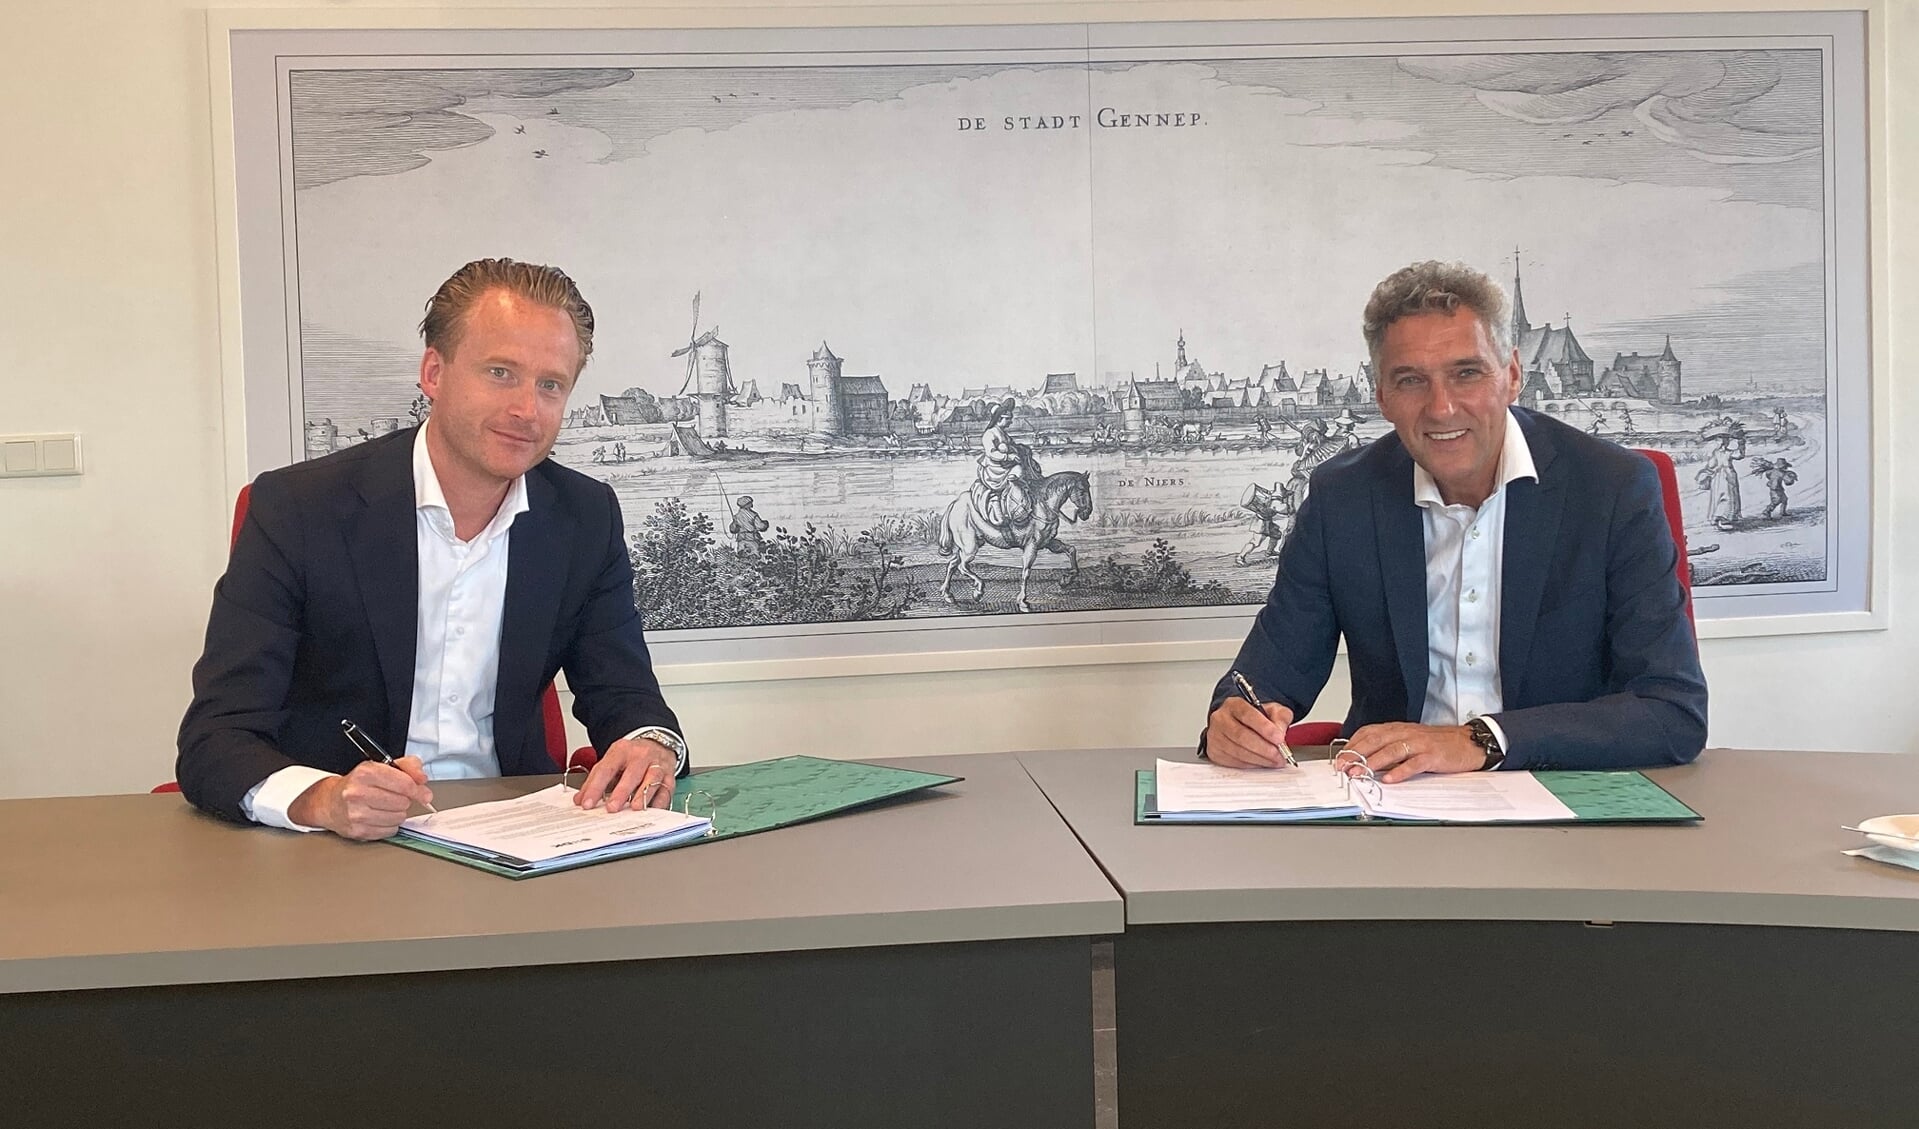 Mark Janssens van SDK Vastgoed en burgemeester Hans Teunissen tekenen de overeenkomst grondverkoop Gennepermolen.